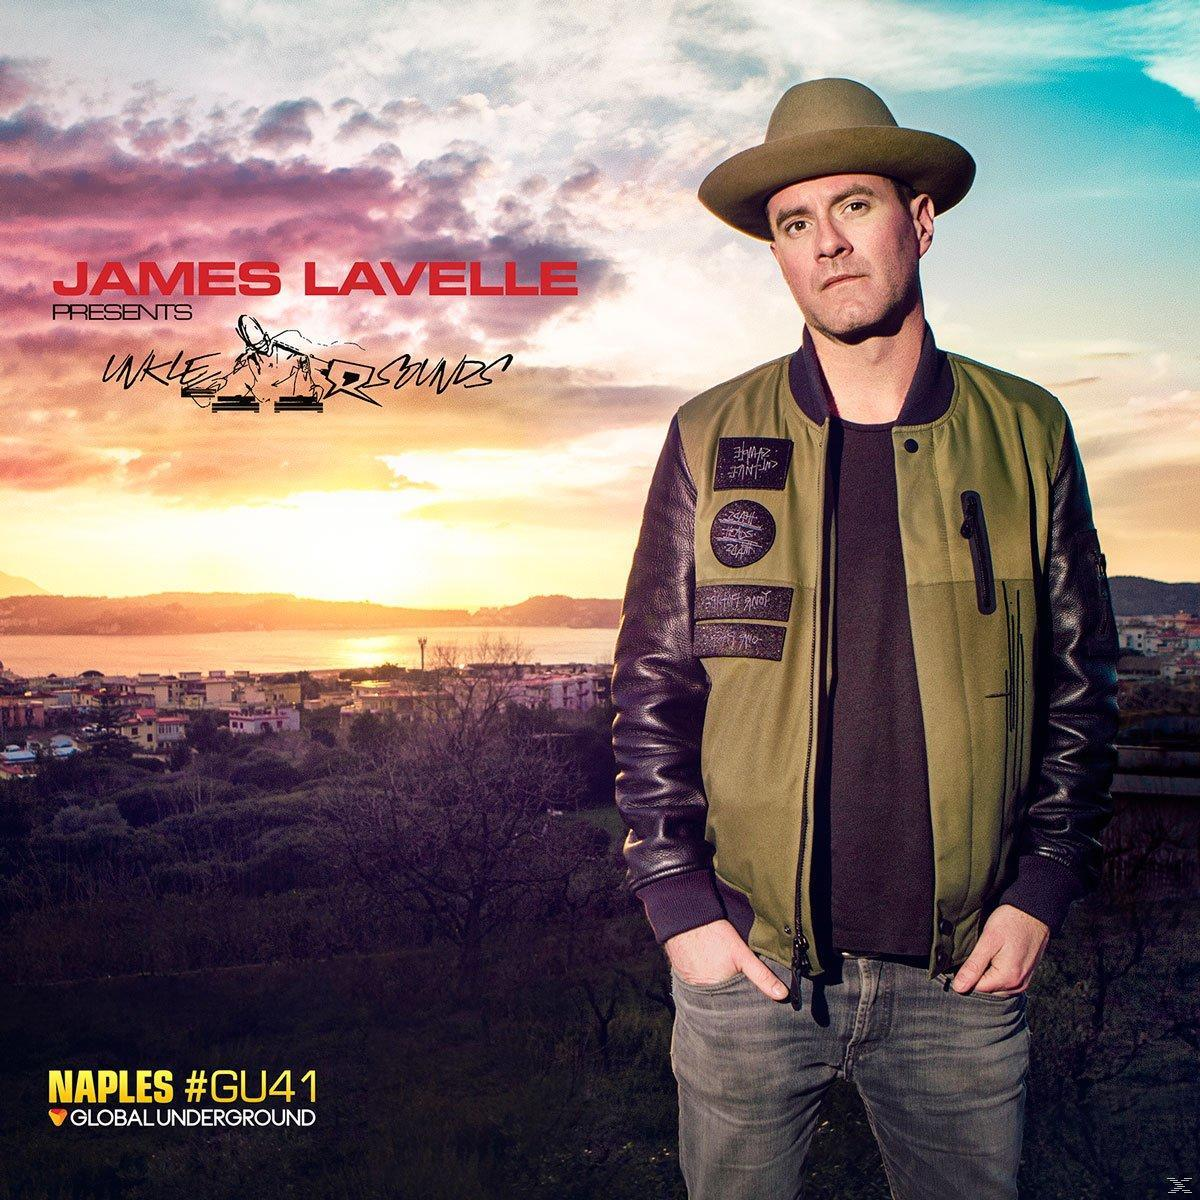 VARIOUS - James (Ltd.Box Pres. (CD) Set) Sounds - Unkle Lavelle